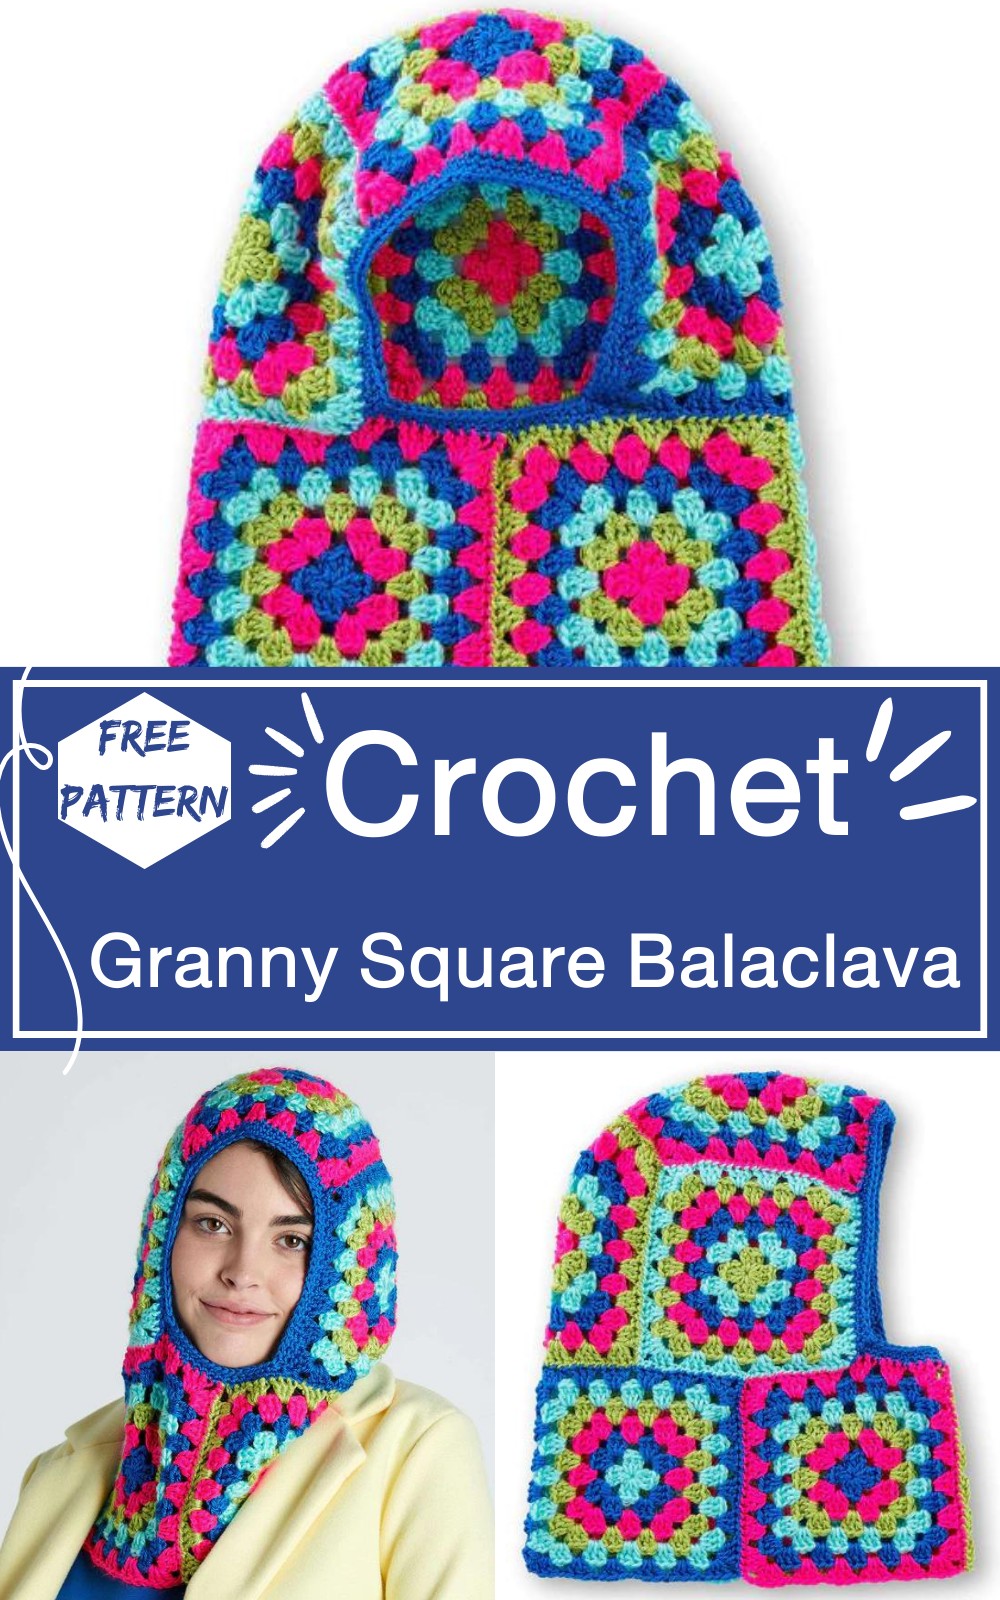 Crochet Granny Square Balaclava